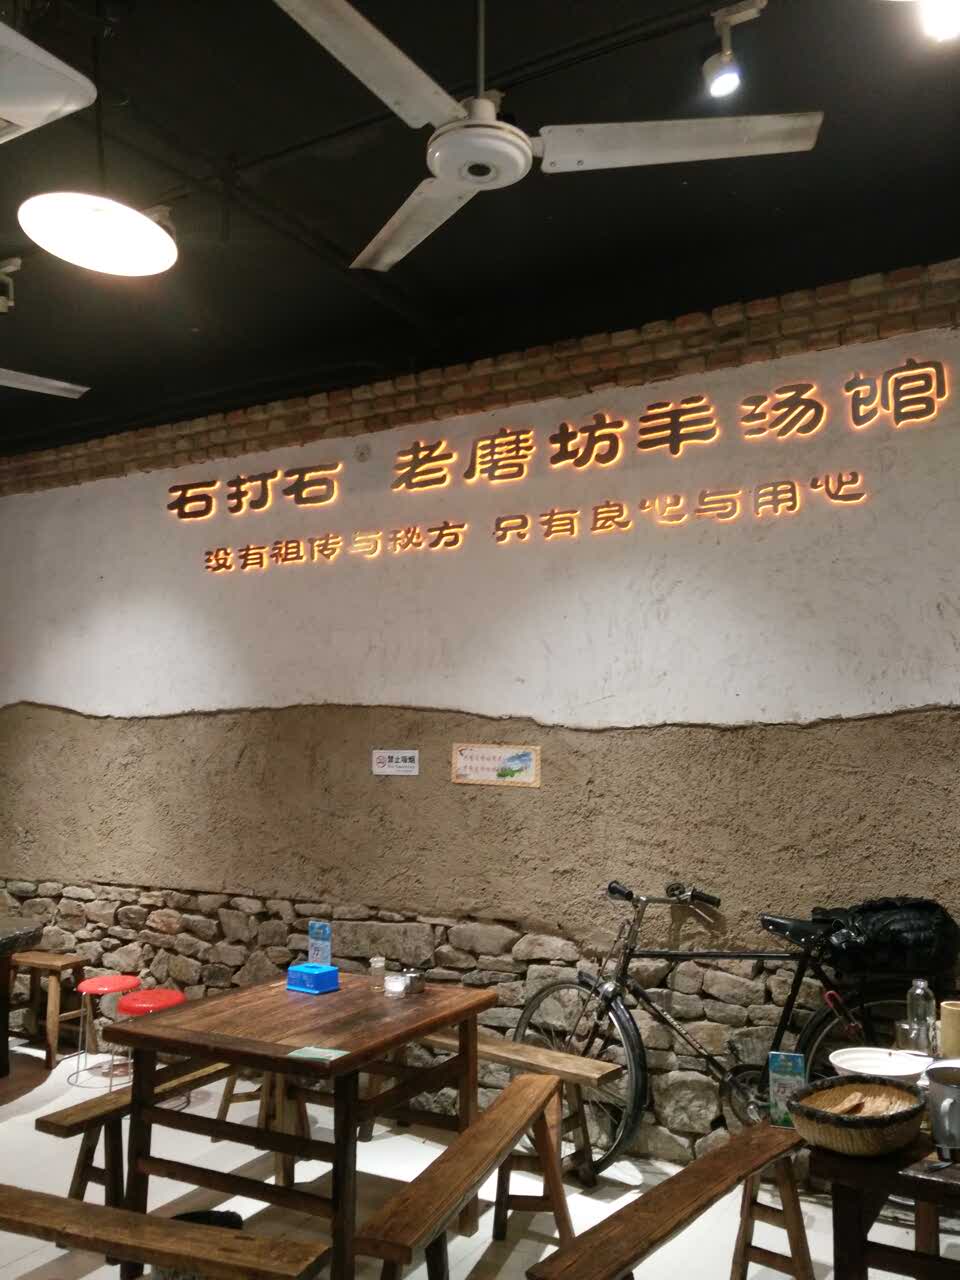 2019老磨坊羊汤馆(湖滨店)美食餐厅,味道不错,不知道.